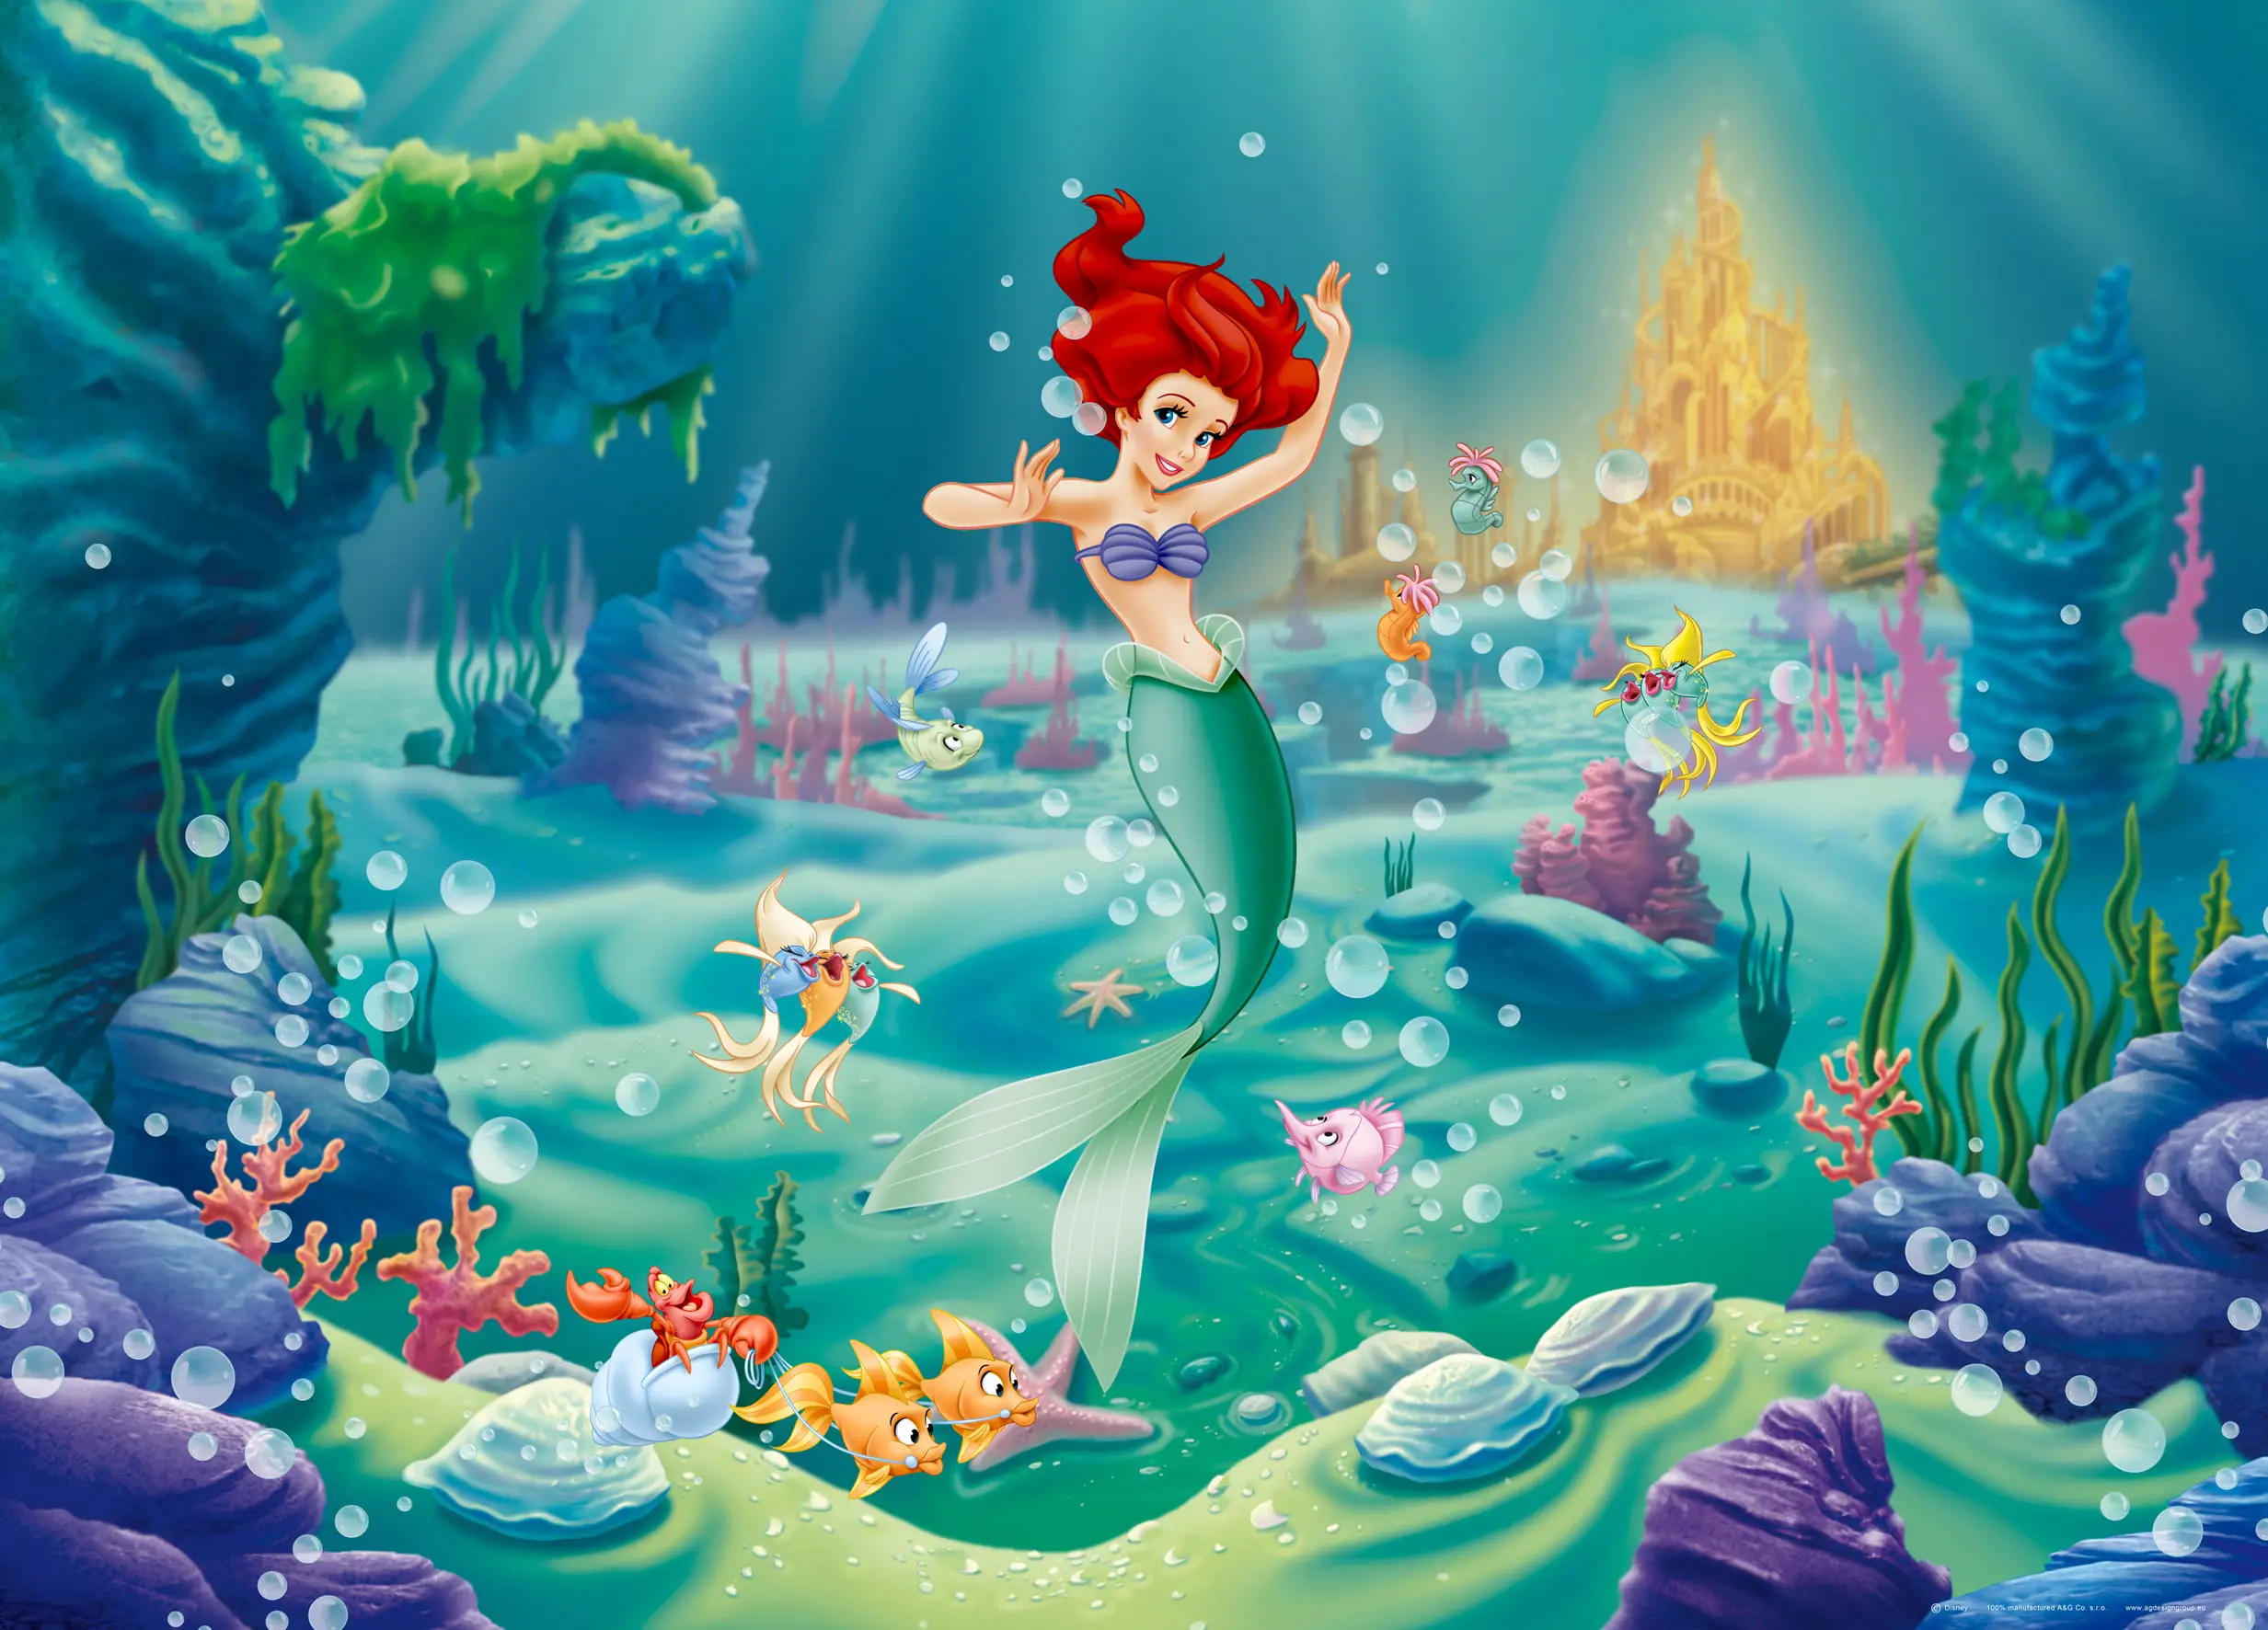 die Meerjungfrau - Arielle Poster